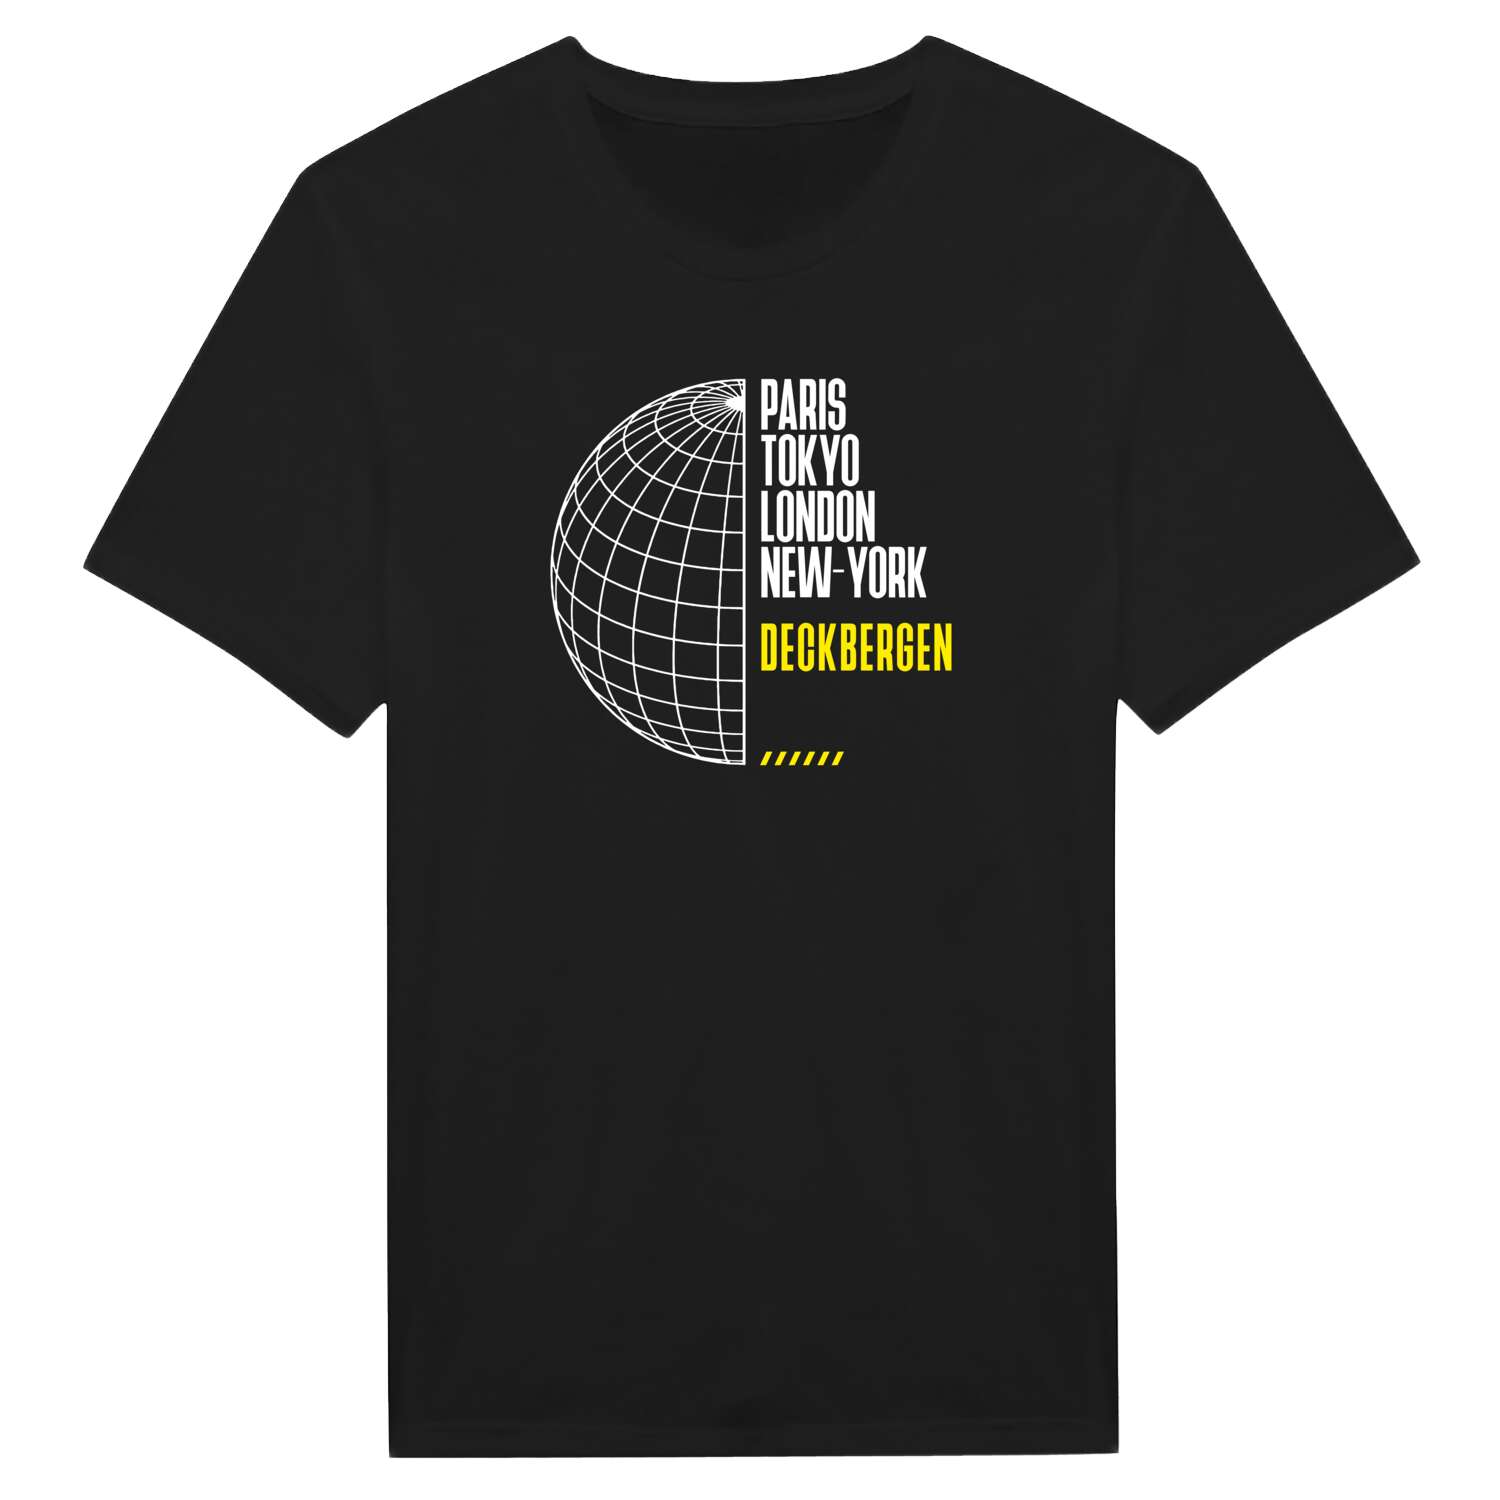 Deckbergen T-Shirt »Paris Tokyo London«